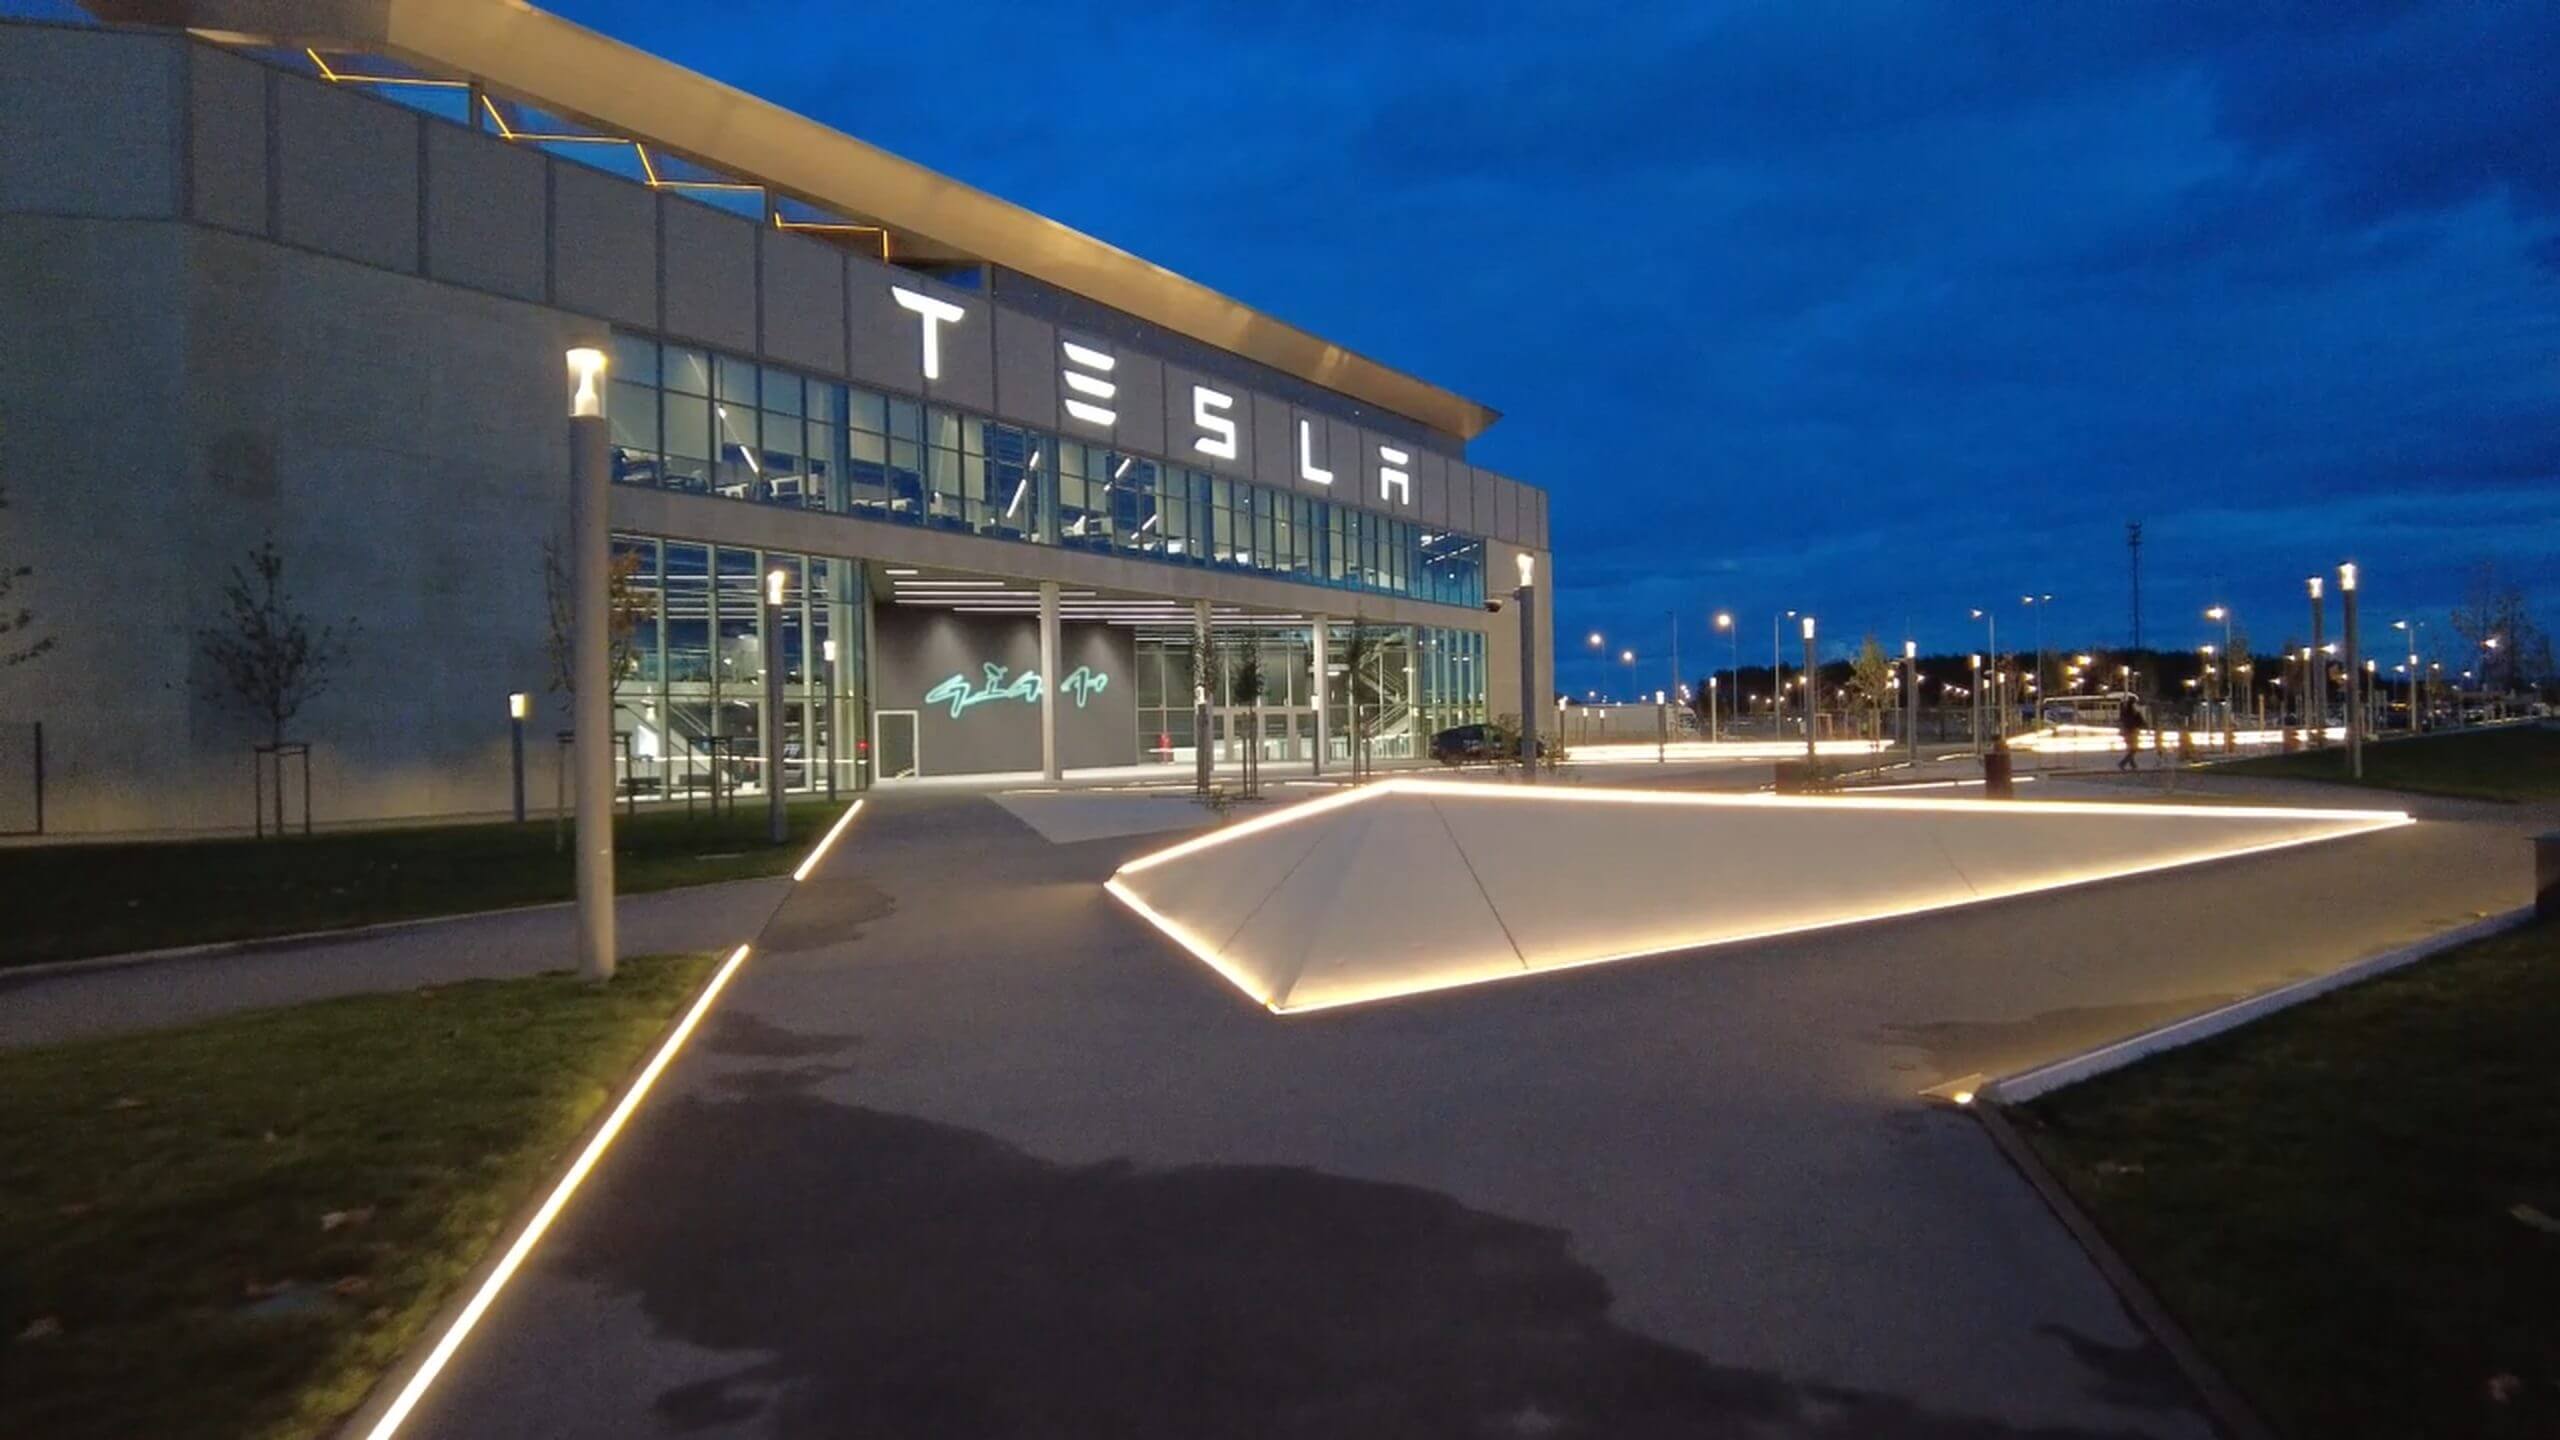 Мэр Грюнхайде поделился обновленной информацией о предлагаемом плане расширения Tesla Giga Berlin